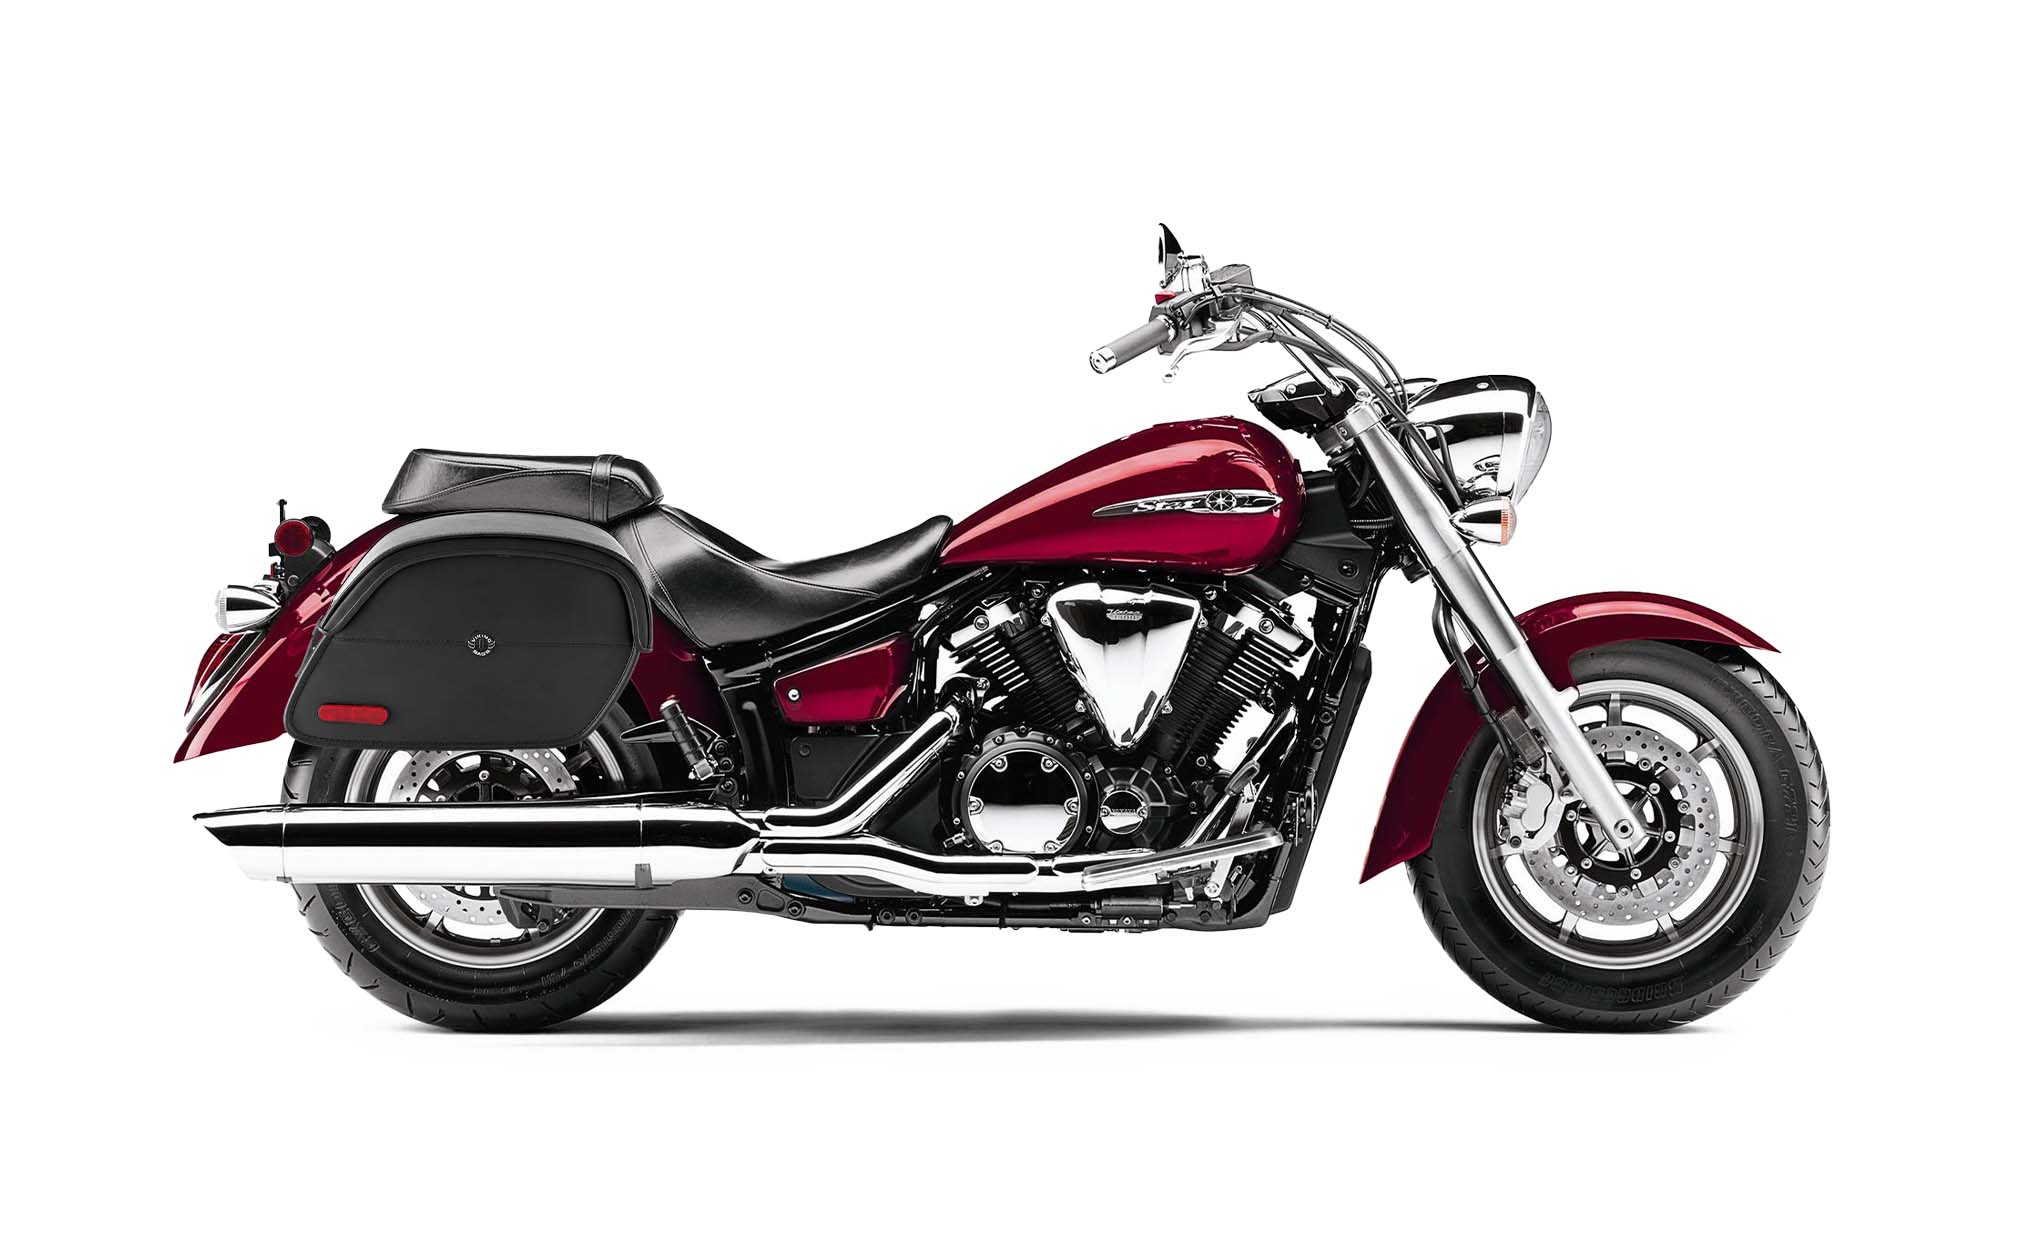 Viking California Large Yamaha V Star 1300 Classic Xvs1300A Leather Motorcycle Saddlebags on Bike Photo @expand